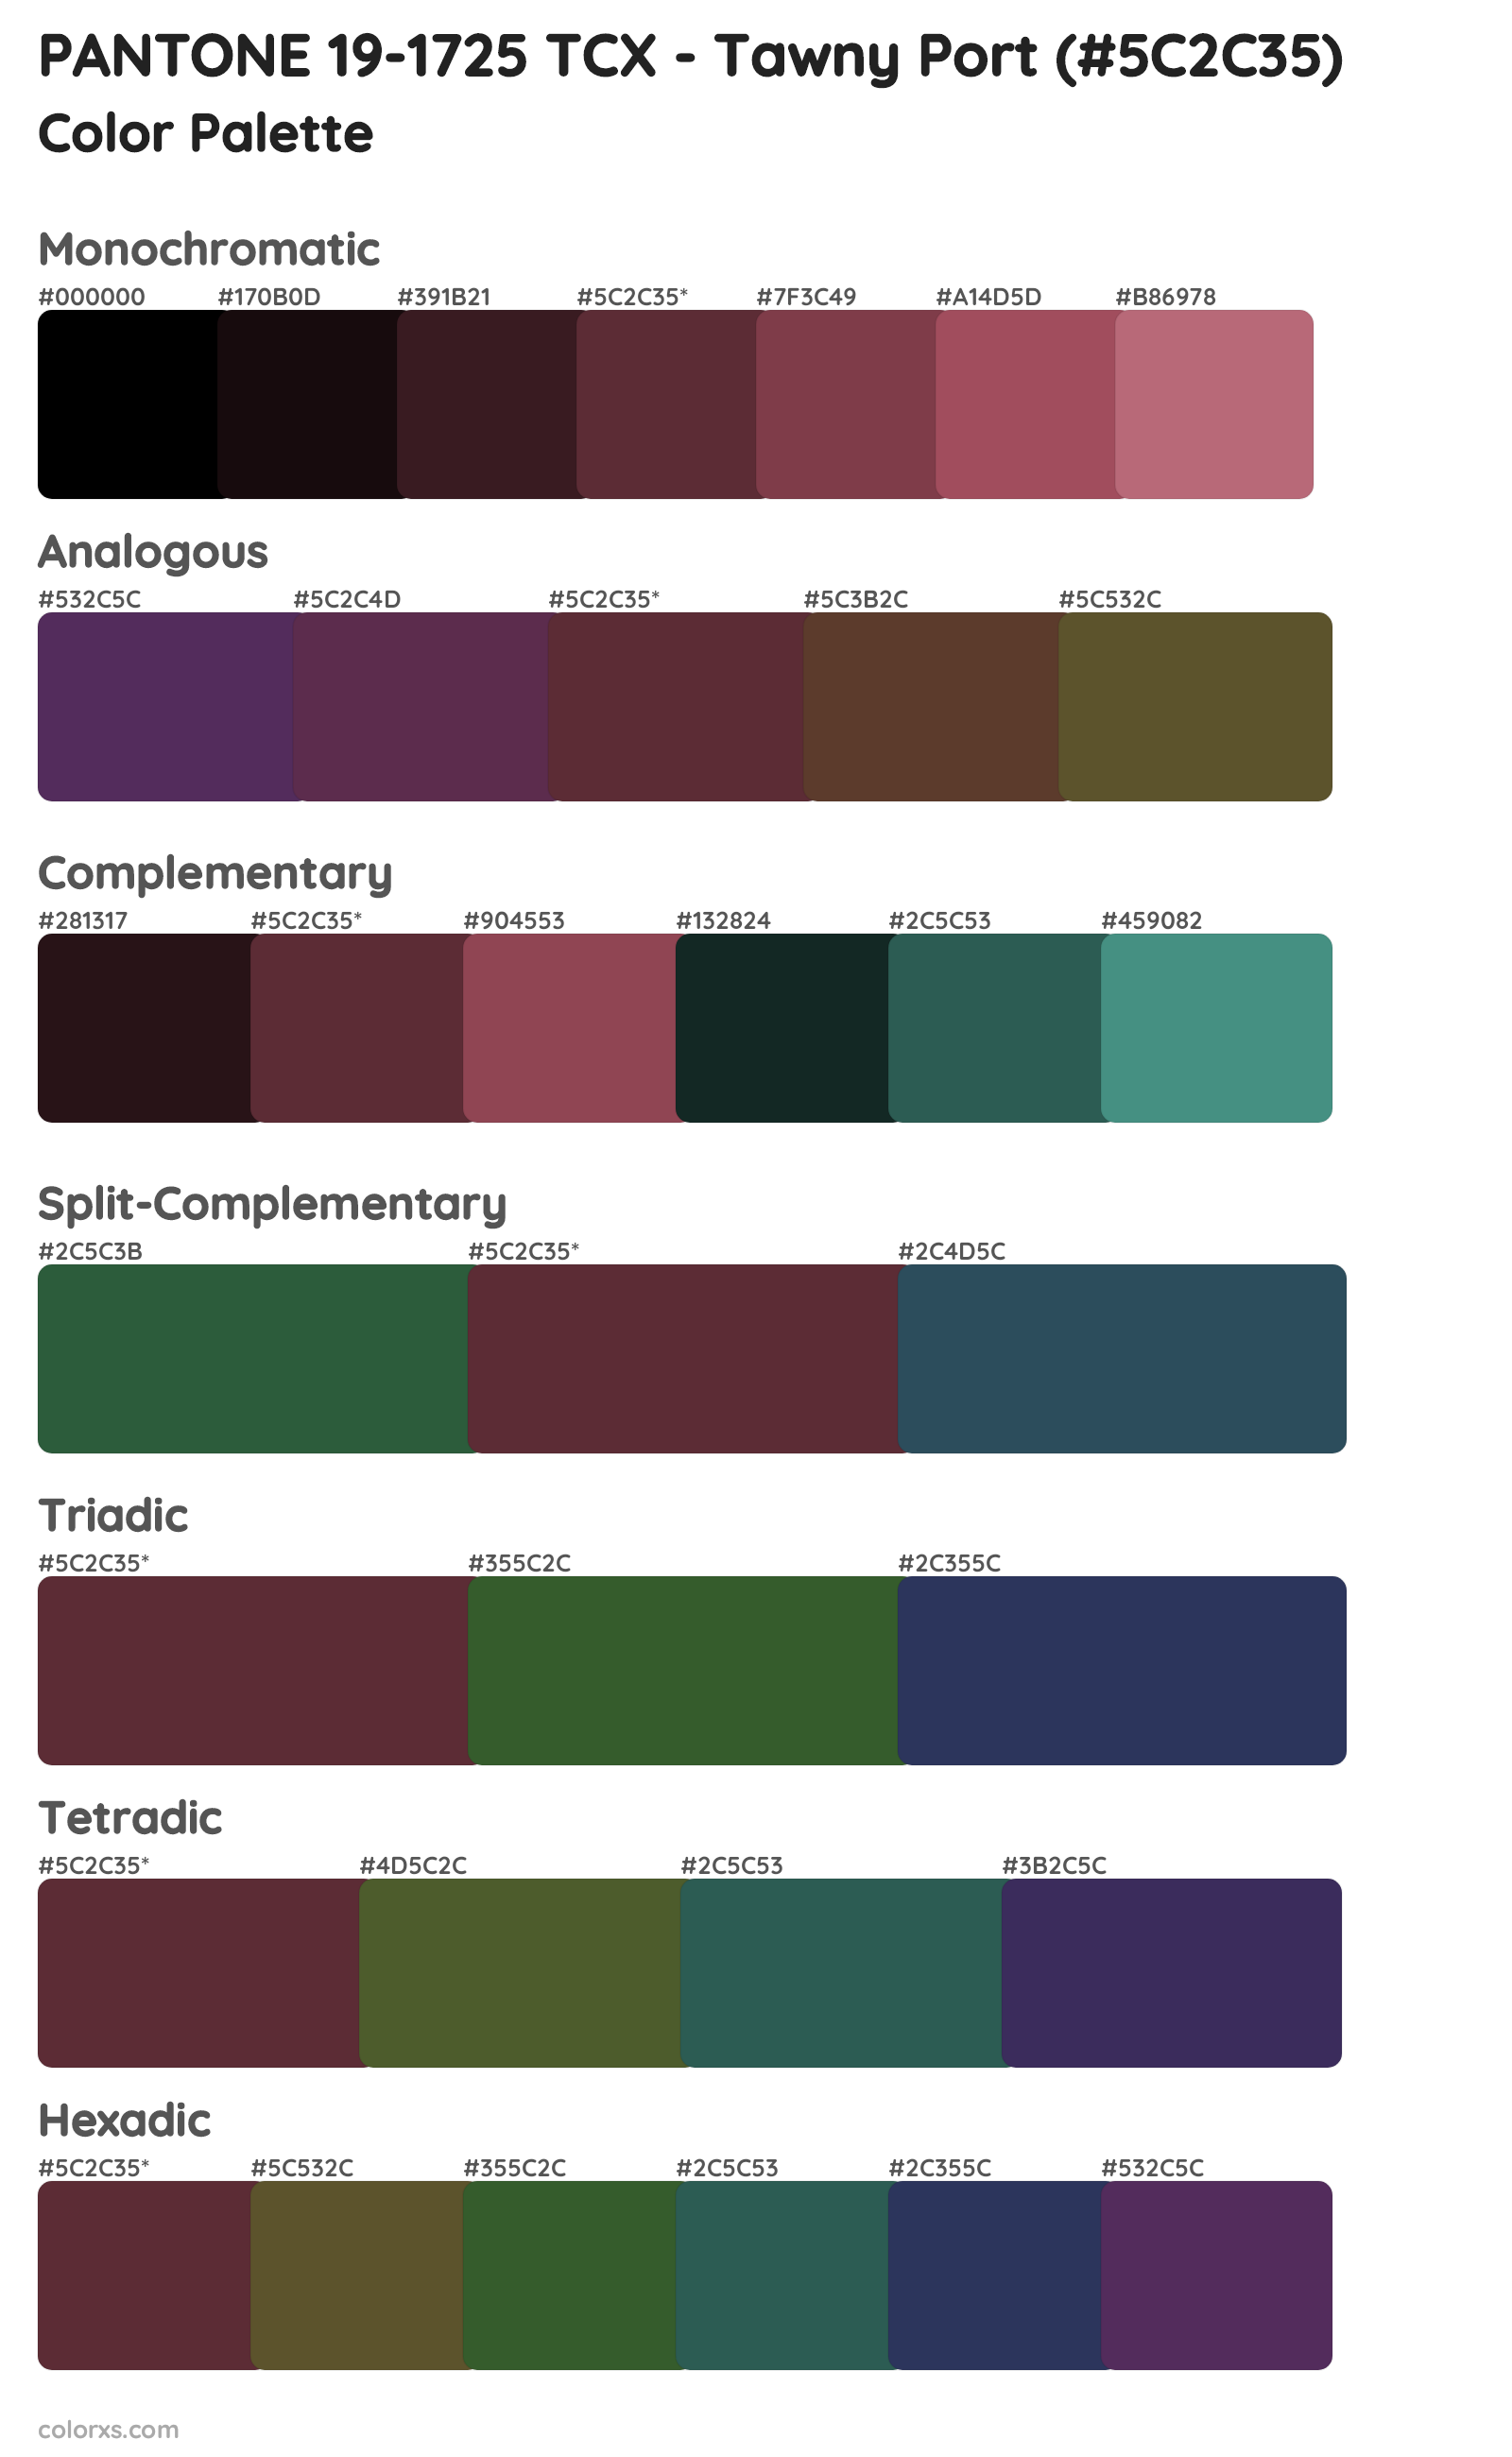 PANTONE 19-1725 TCX - Tawny Port Color Scheme Palettes